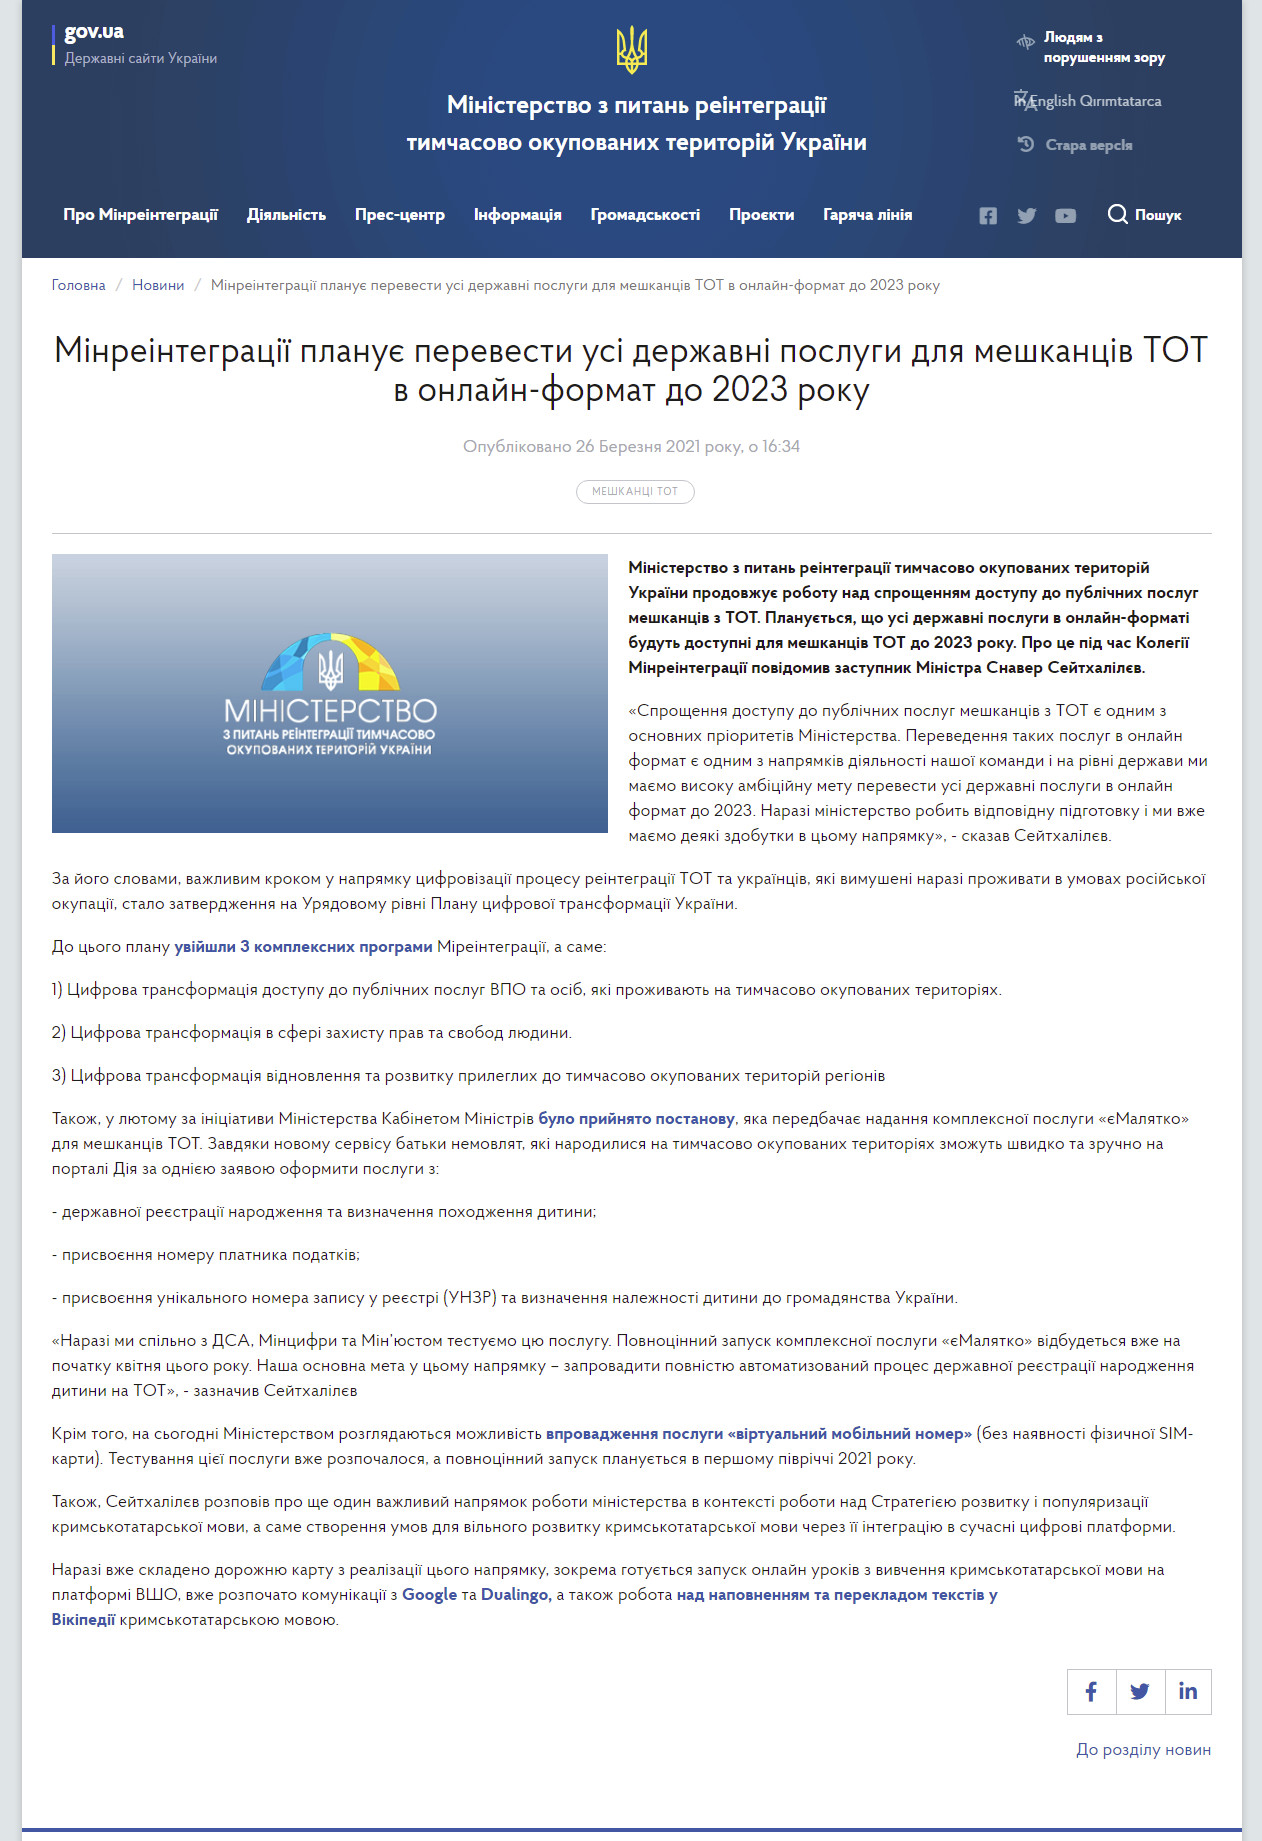 https://minre.gov.ua/news/minreintegraciyi-planuye-perevesty-usi-derzhavni-poslugy-dlya-meshkanciv-tot-v-onlayn-format-do